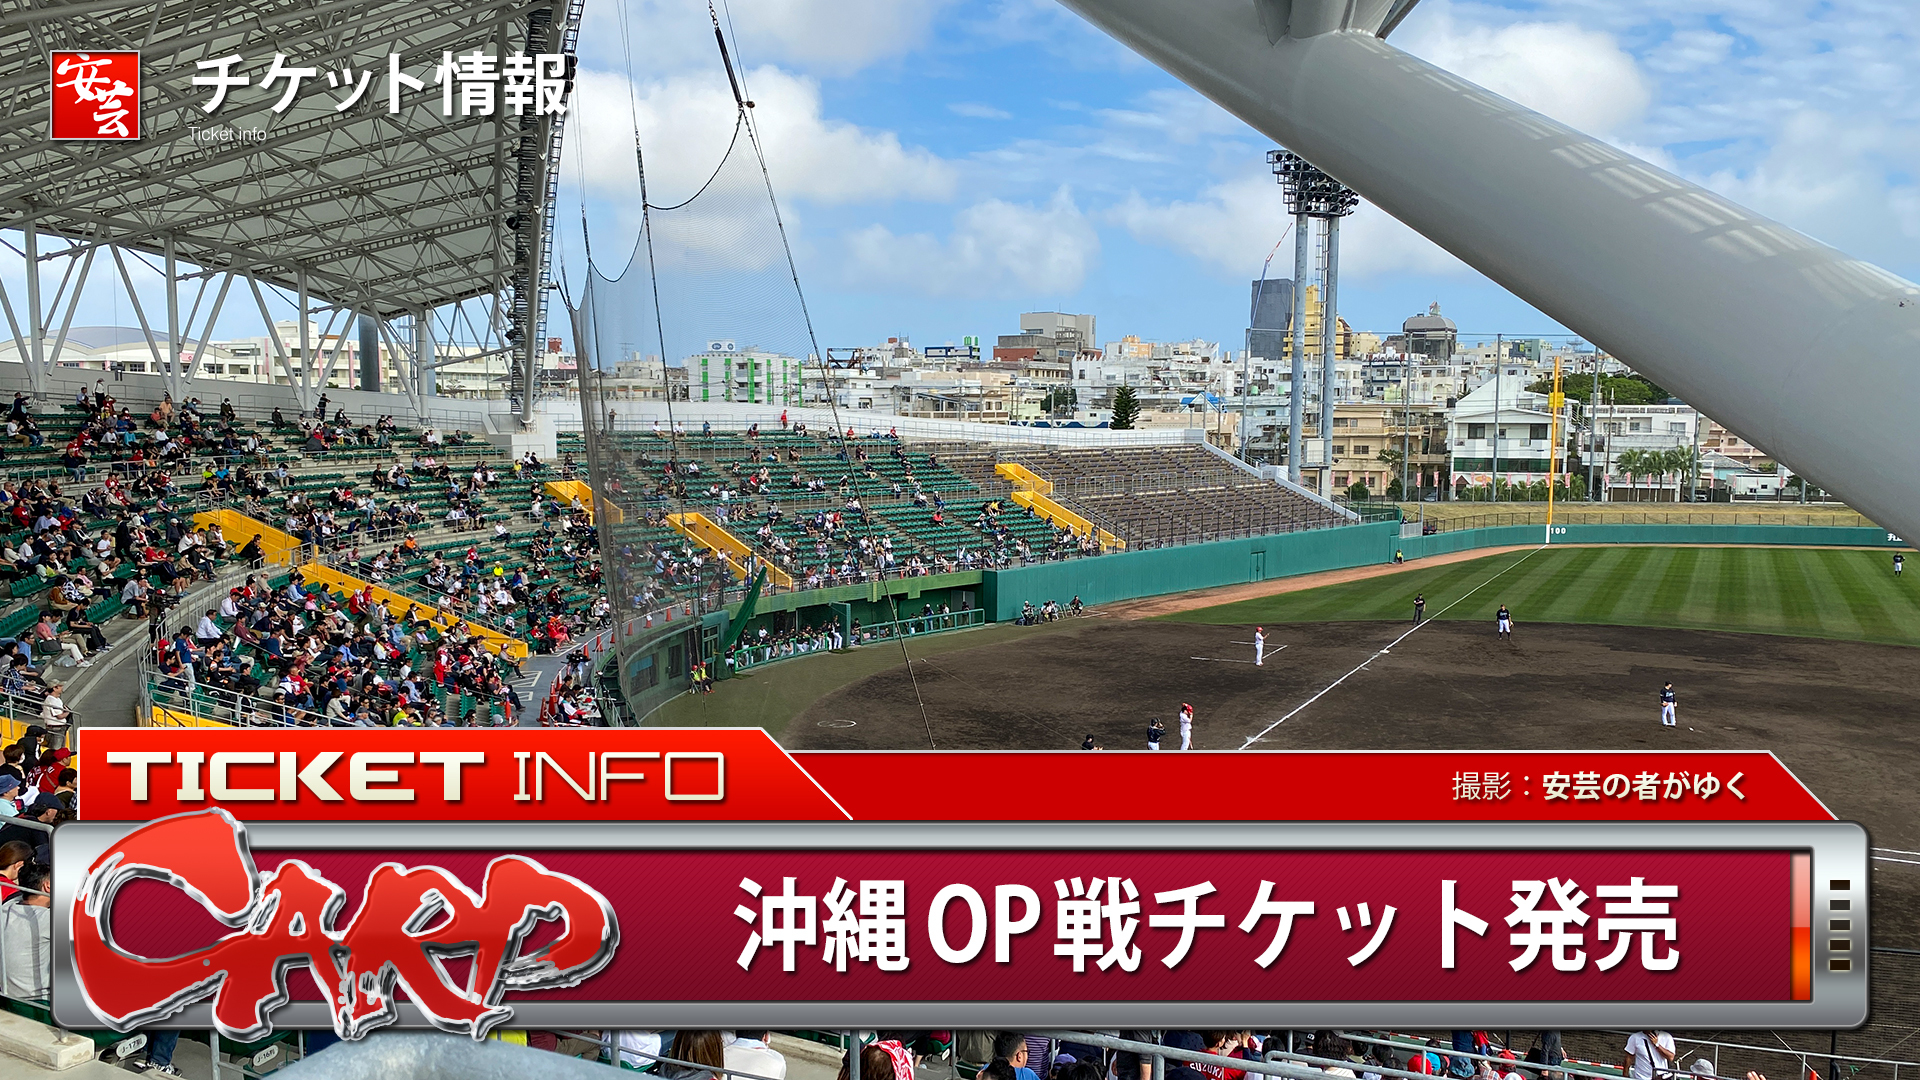 【カープ】沖縄・コザしんきんスタジアムで行われるオープン戦のチケットが発売